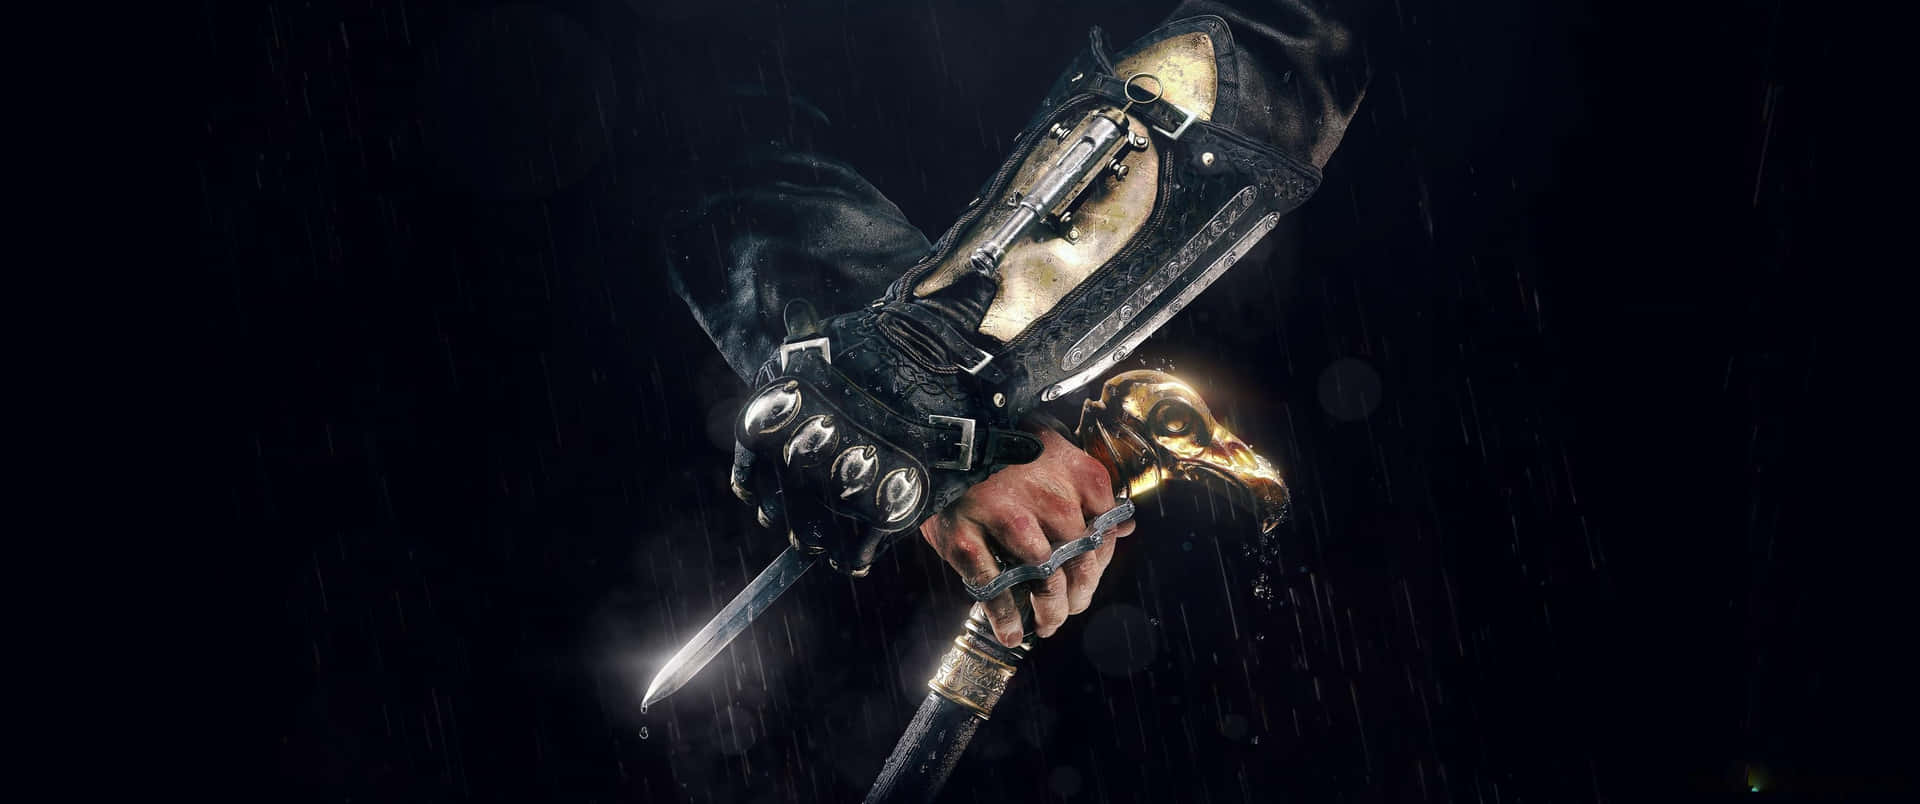 3440x1440pbakgrundsbild För Assassin's Creed Odyssey Med Dolda Klingor Och En Käpp.